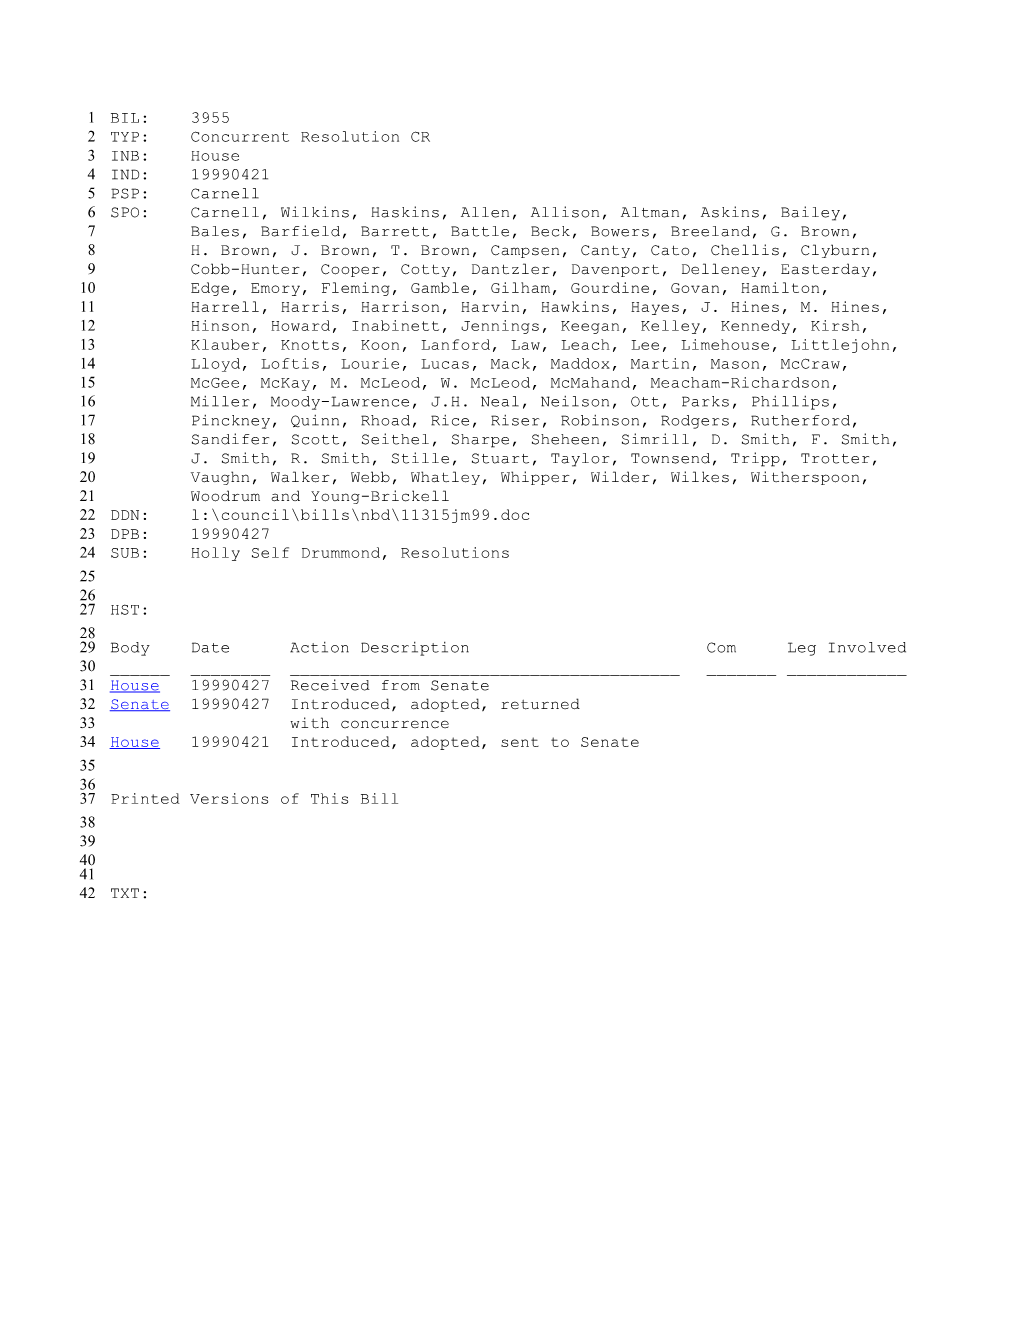 1999-2000 Bill 3955: Holly Self Drummond, Resolutions - South Carolina Legislature Online